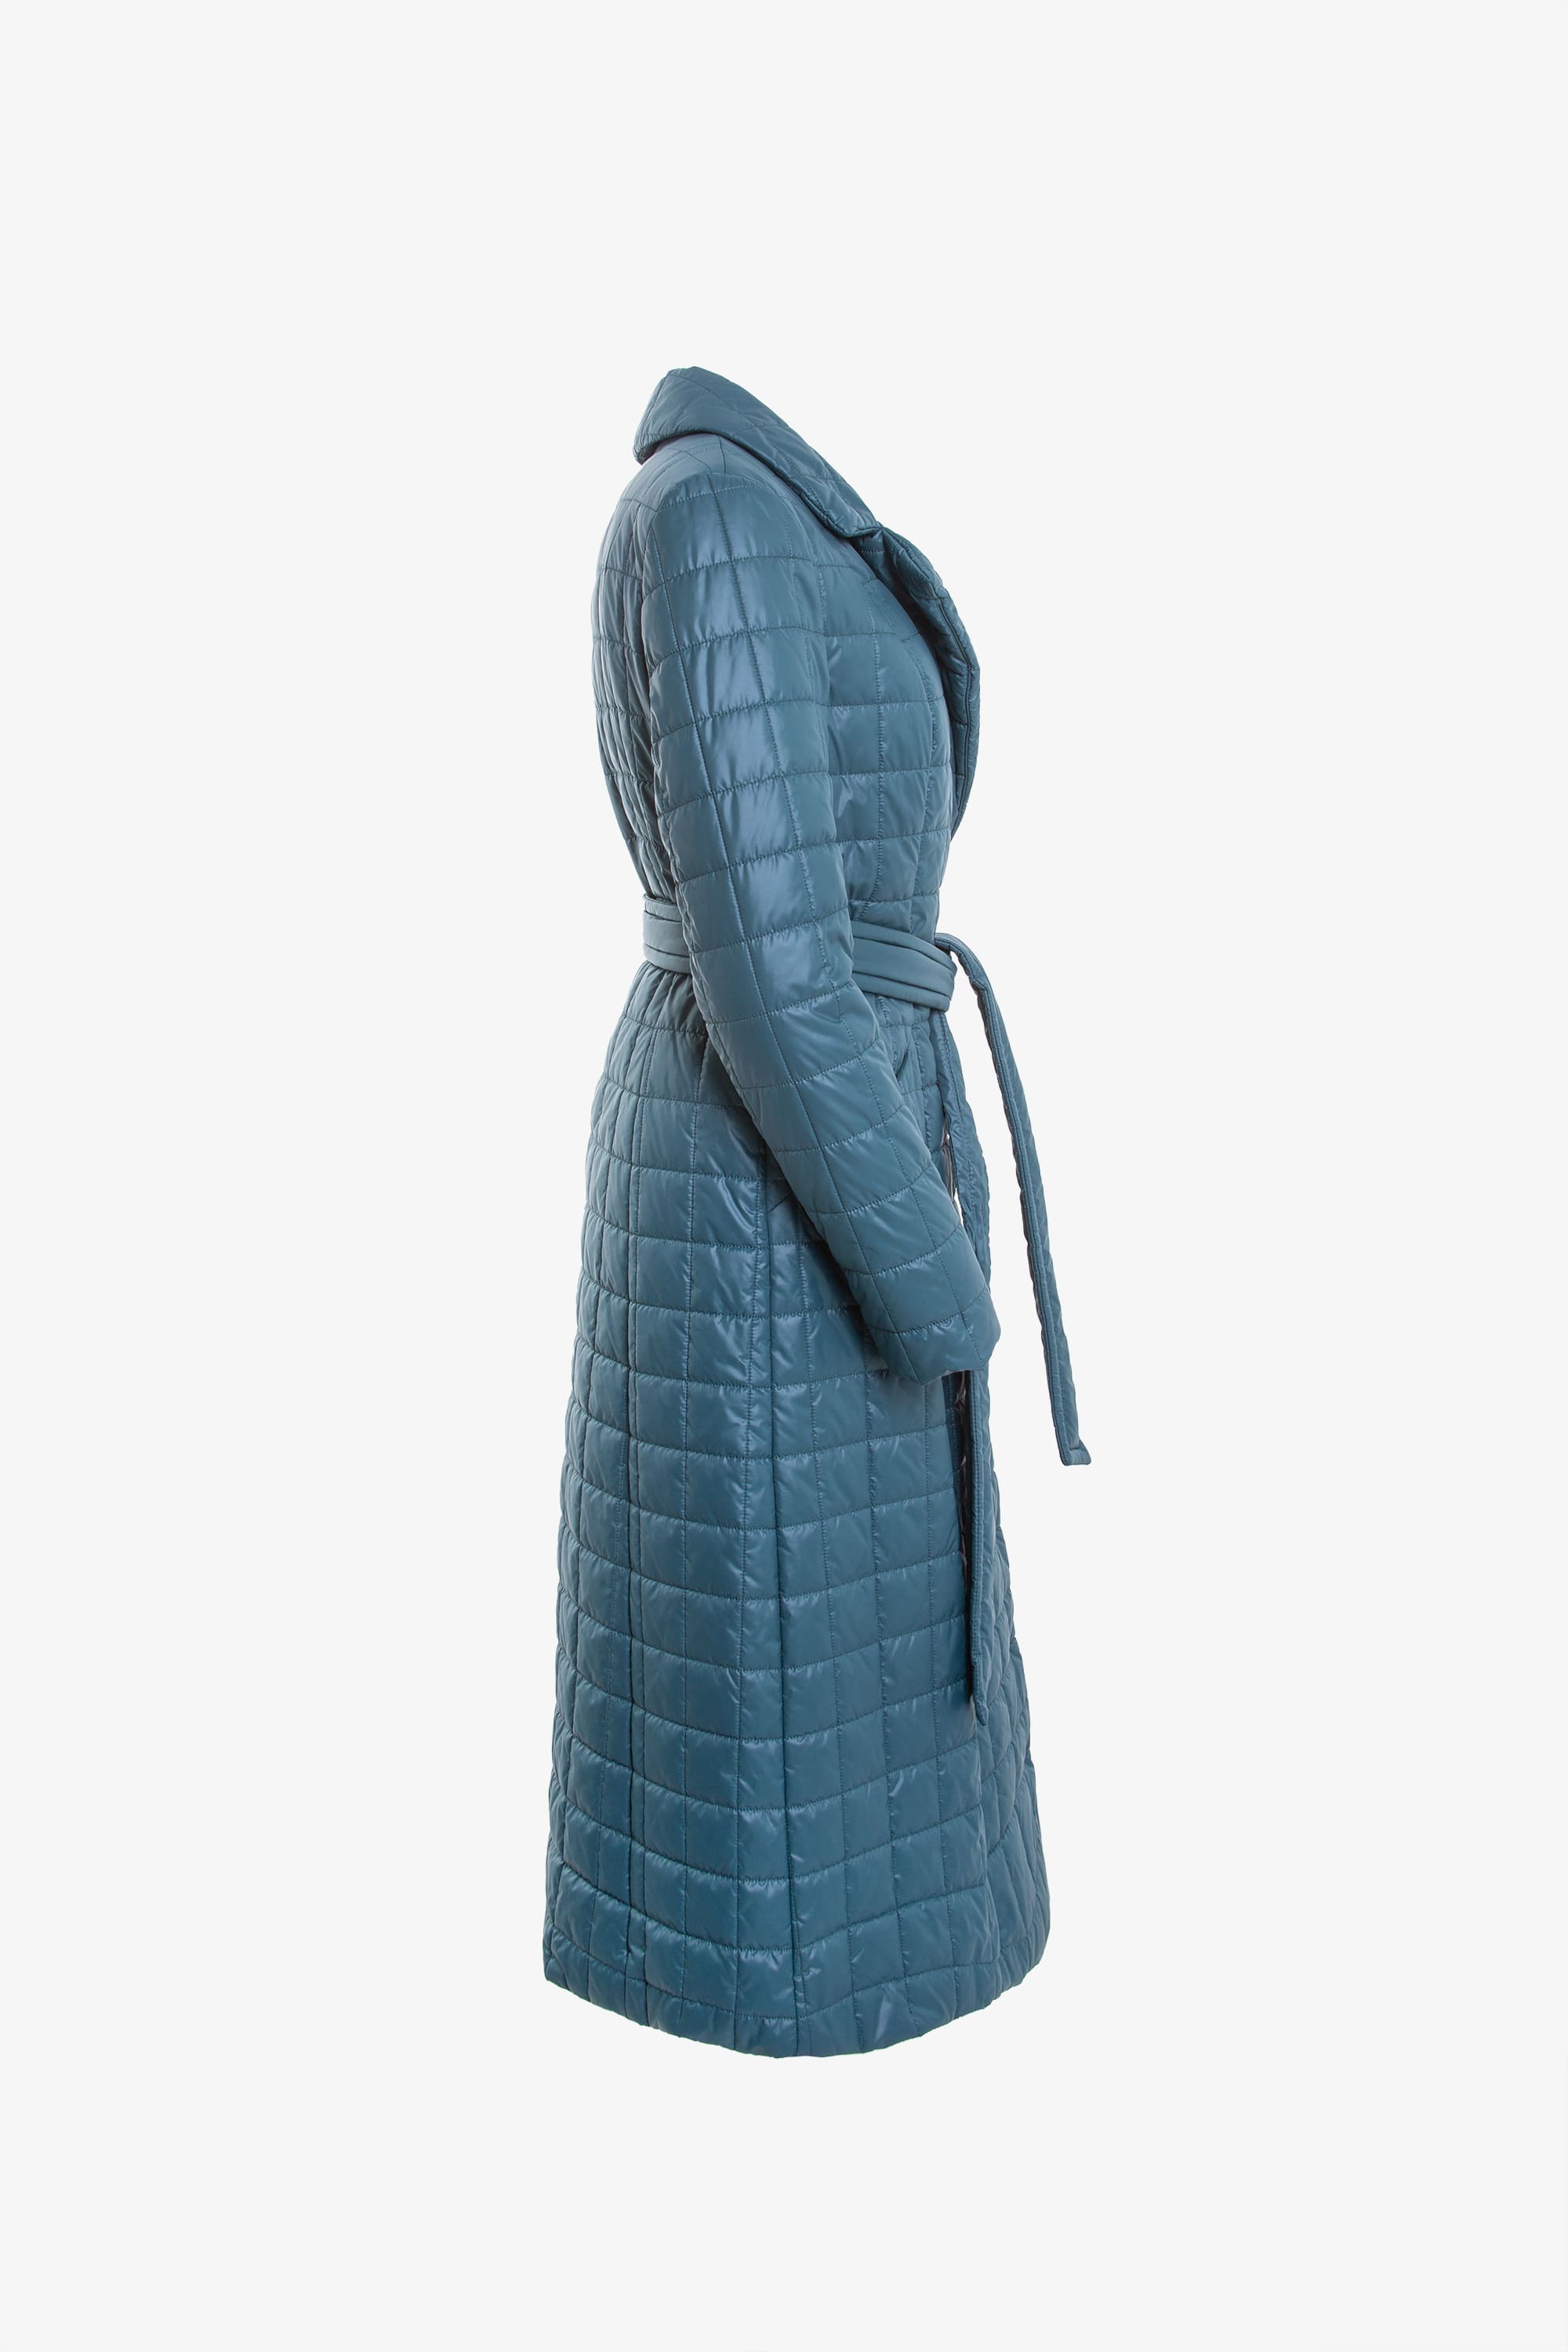 Пальто женское плащевое утепленное 5-11475-1. Фото 2.